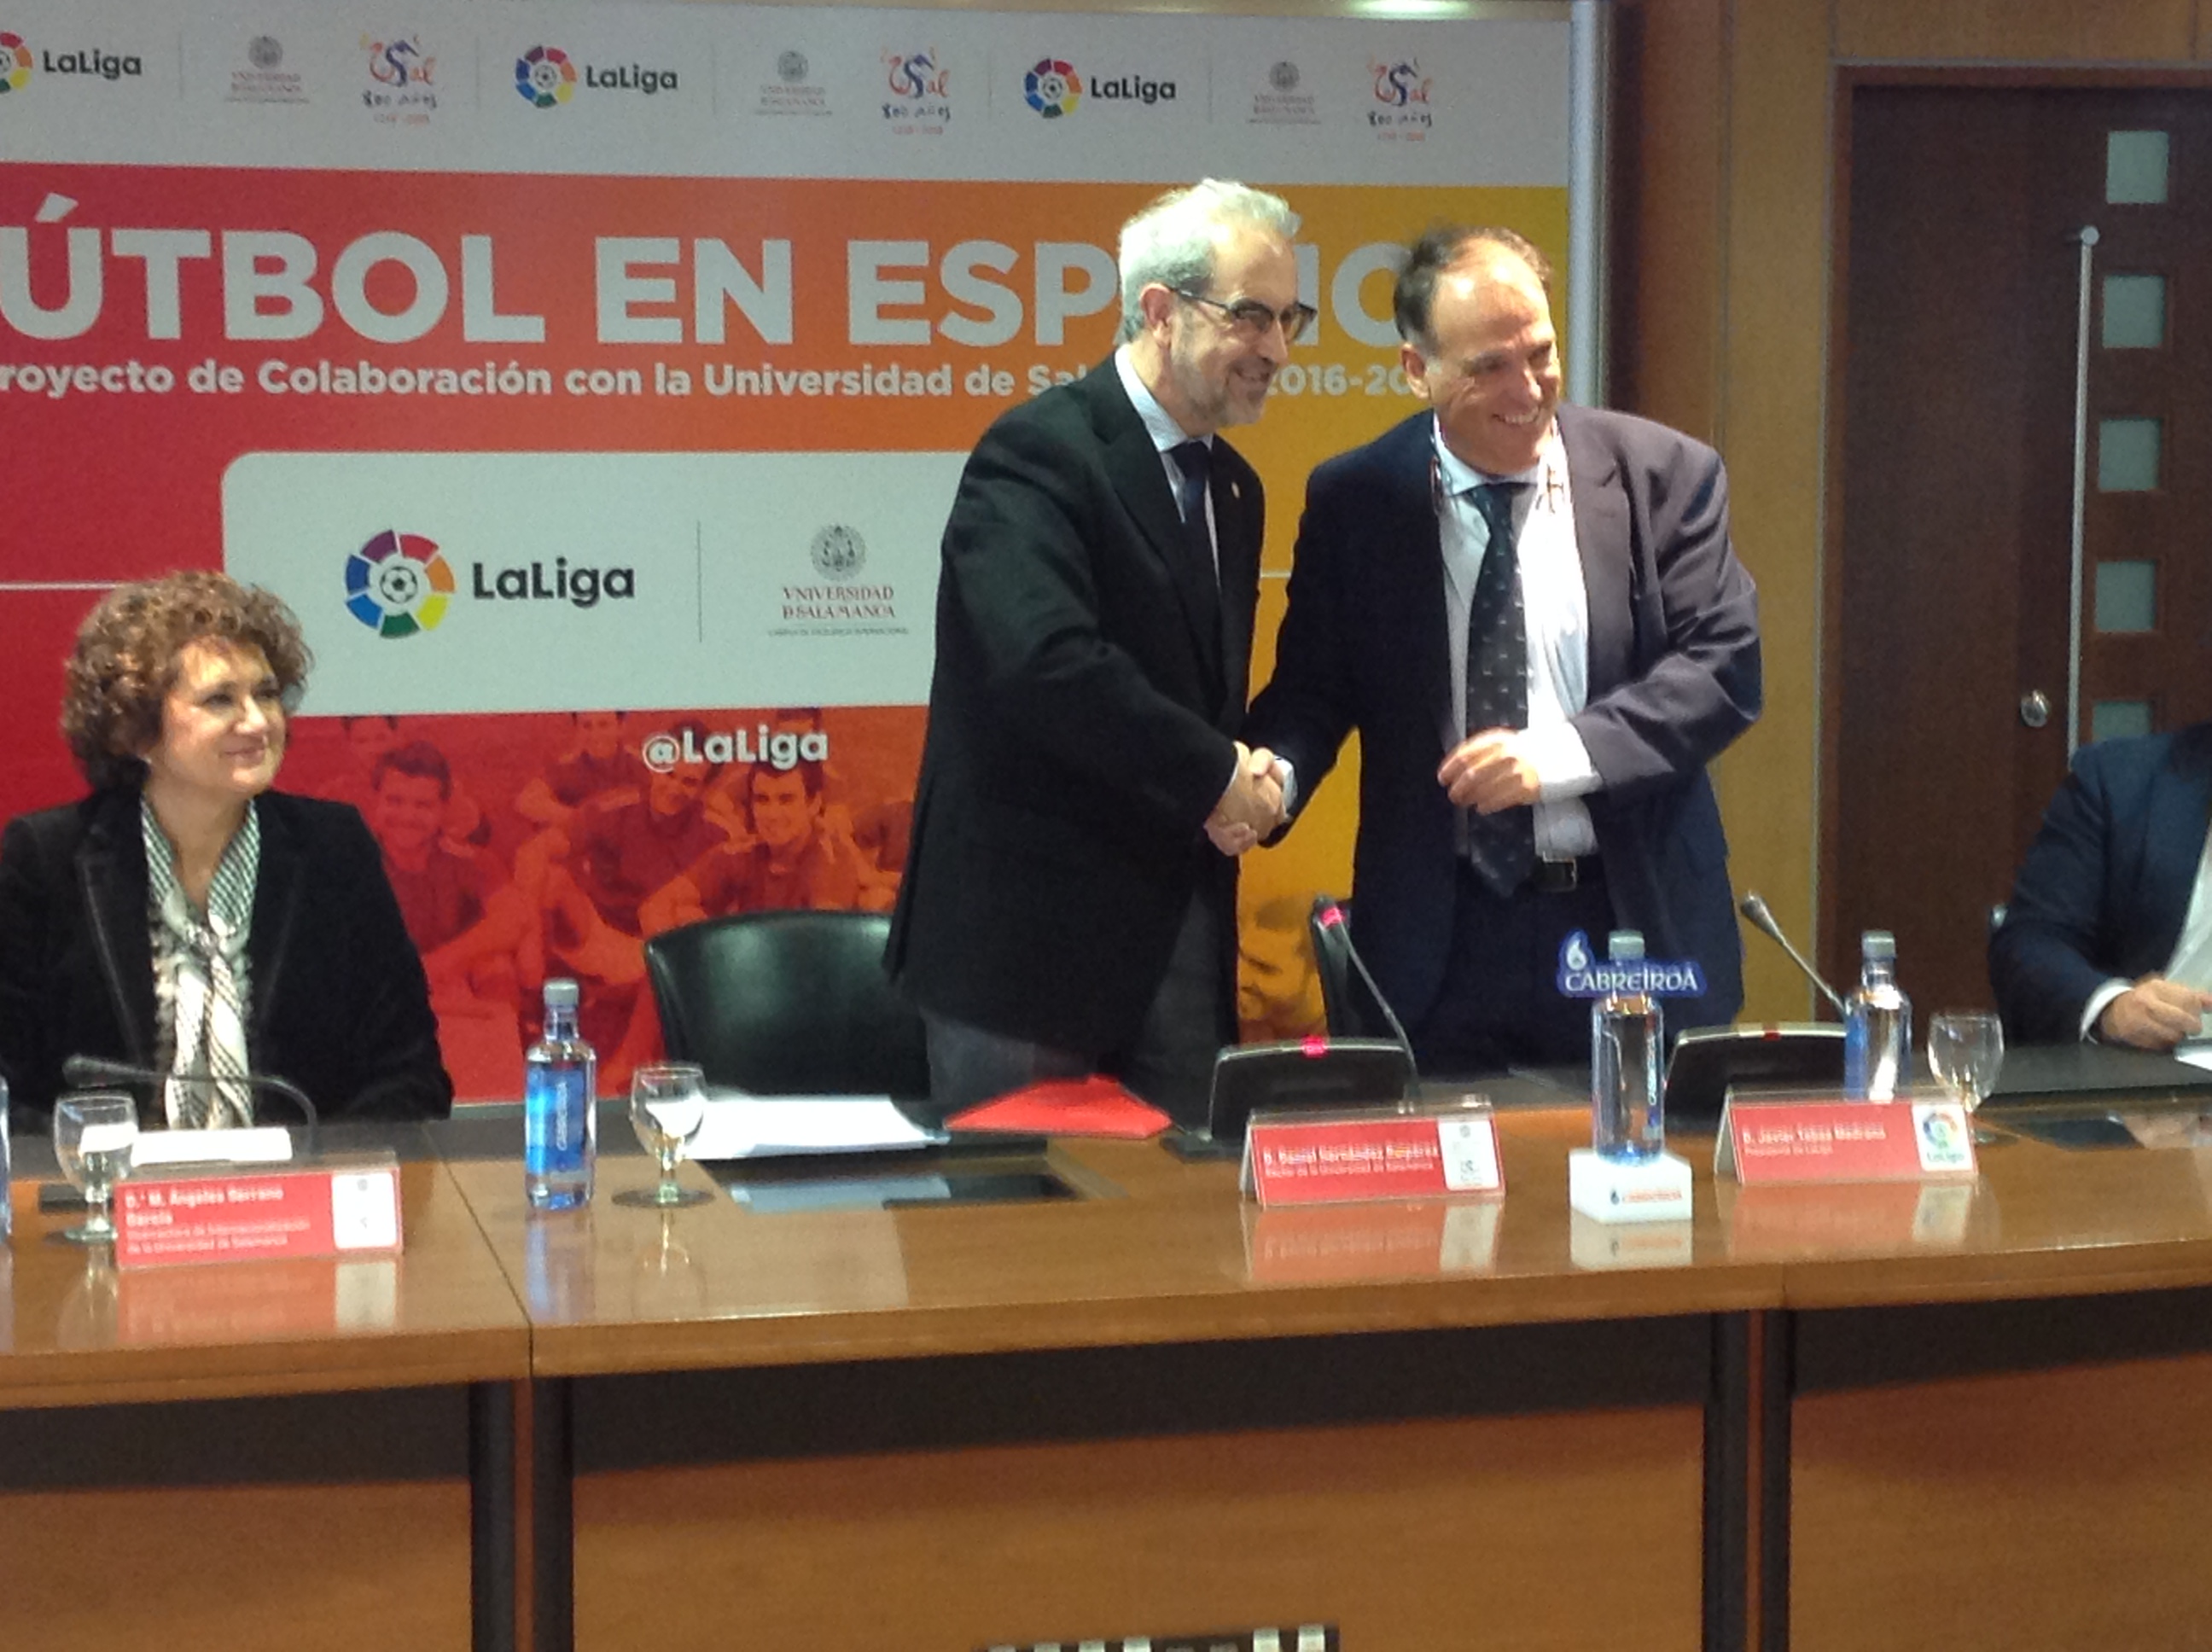 La Universidad de Salamanca y LaLiga firman un convenio de colaboración bajo el lema “Fútbol en Español”